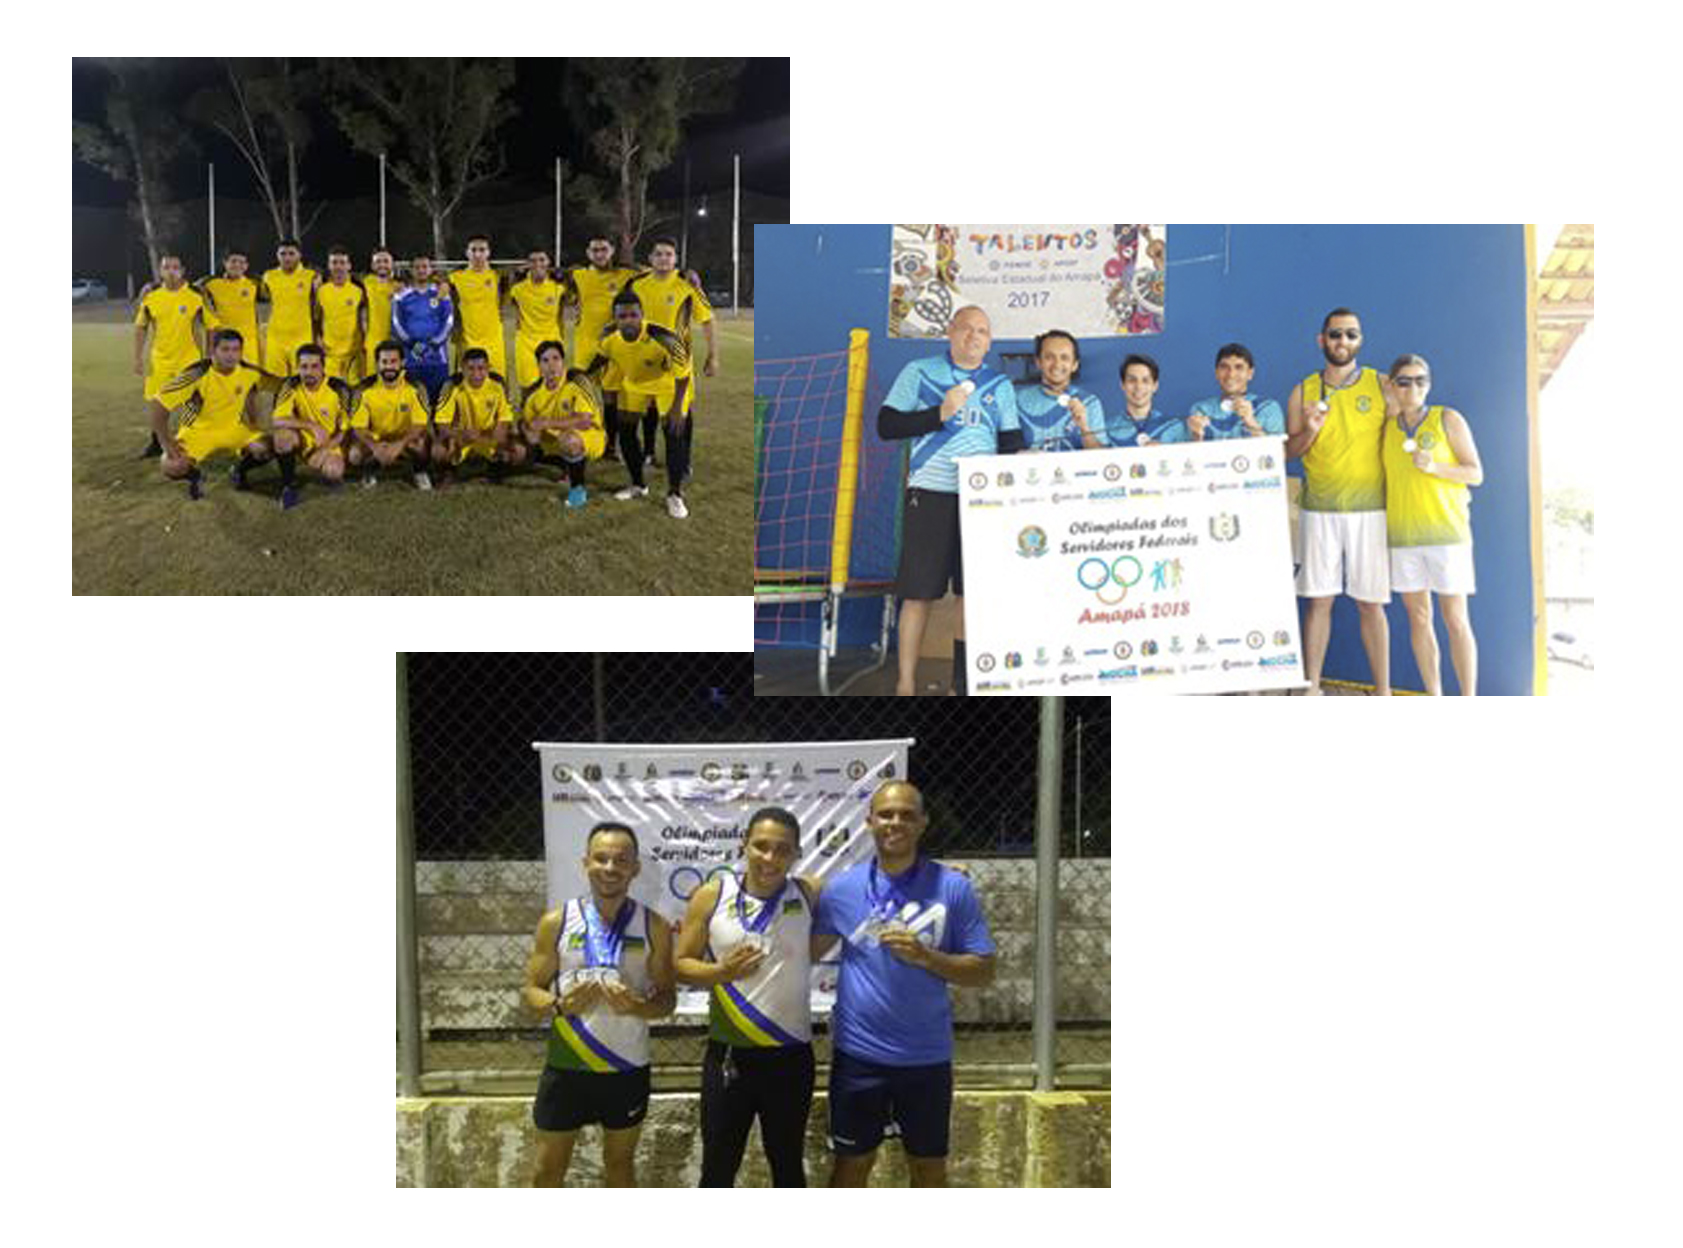 INSTITUCIONAL: JFAP é campeã dos Jogos Federais do Amapá